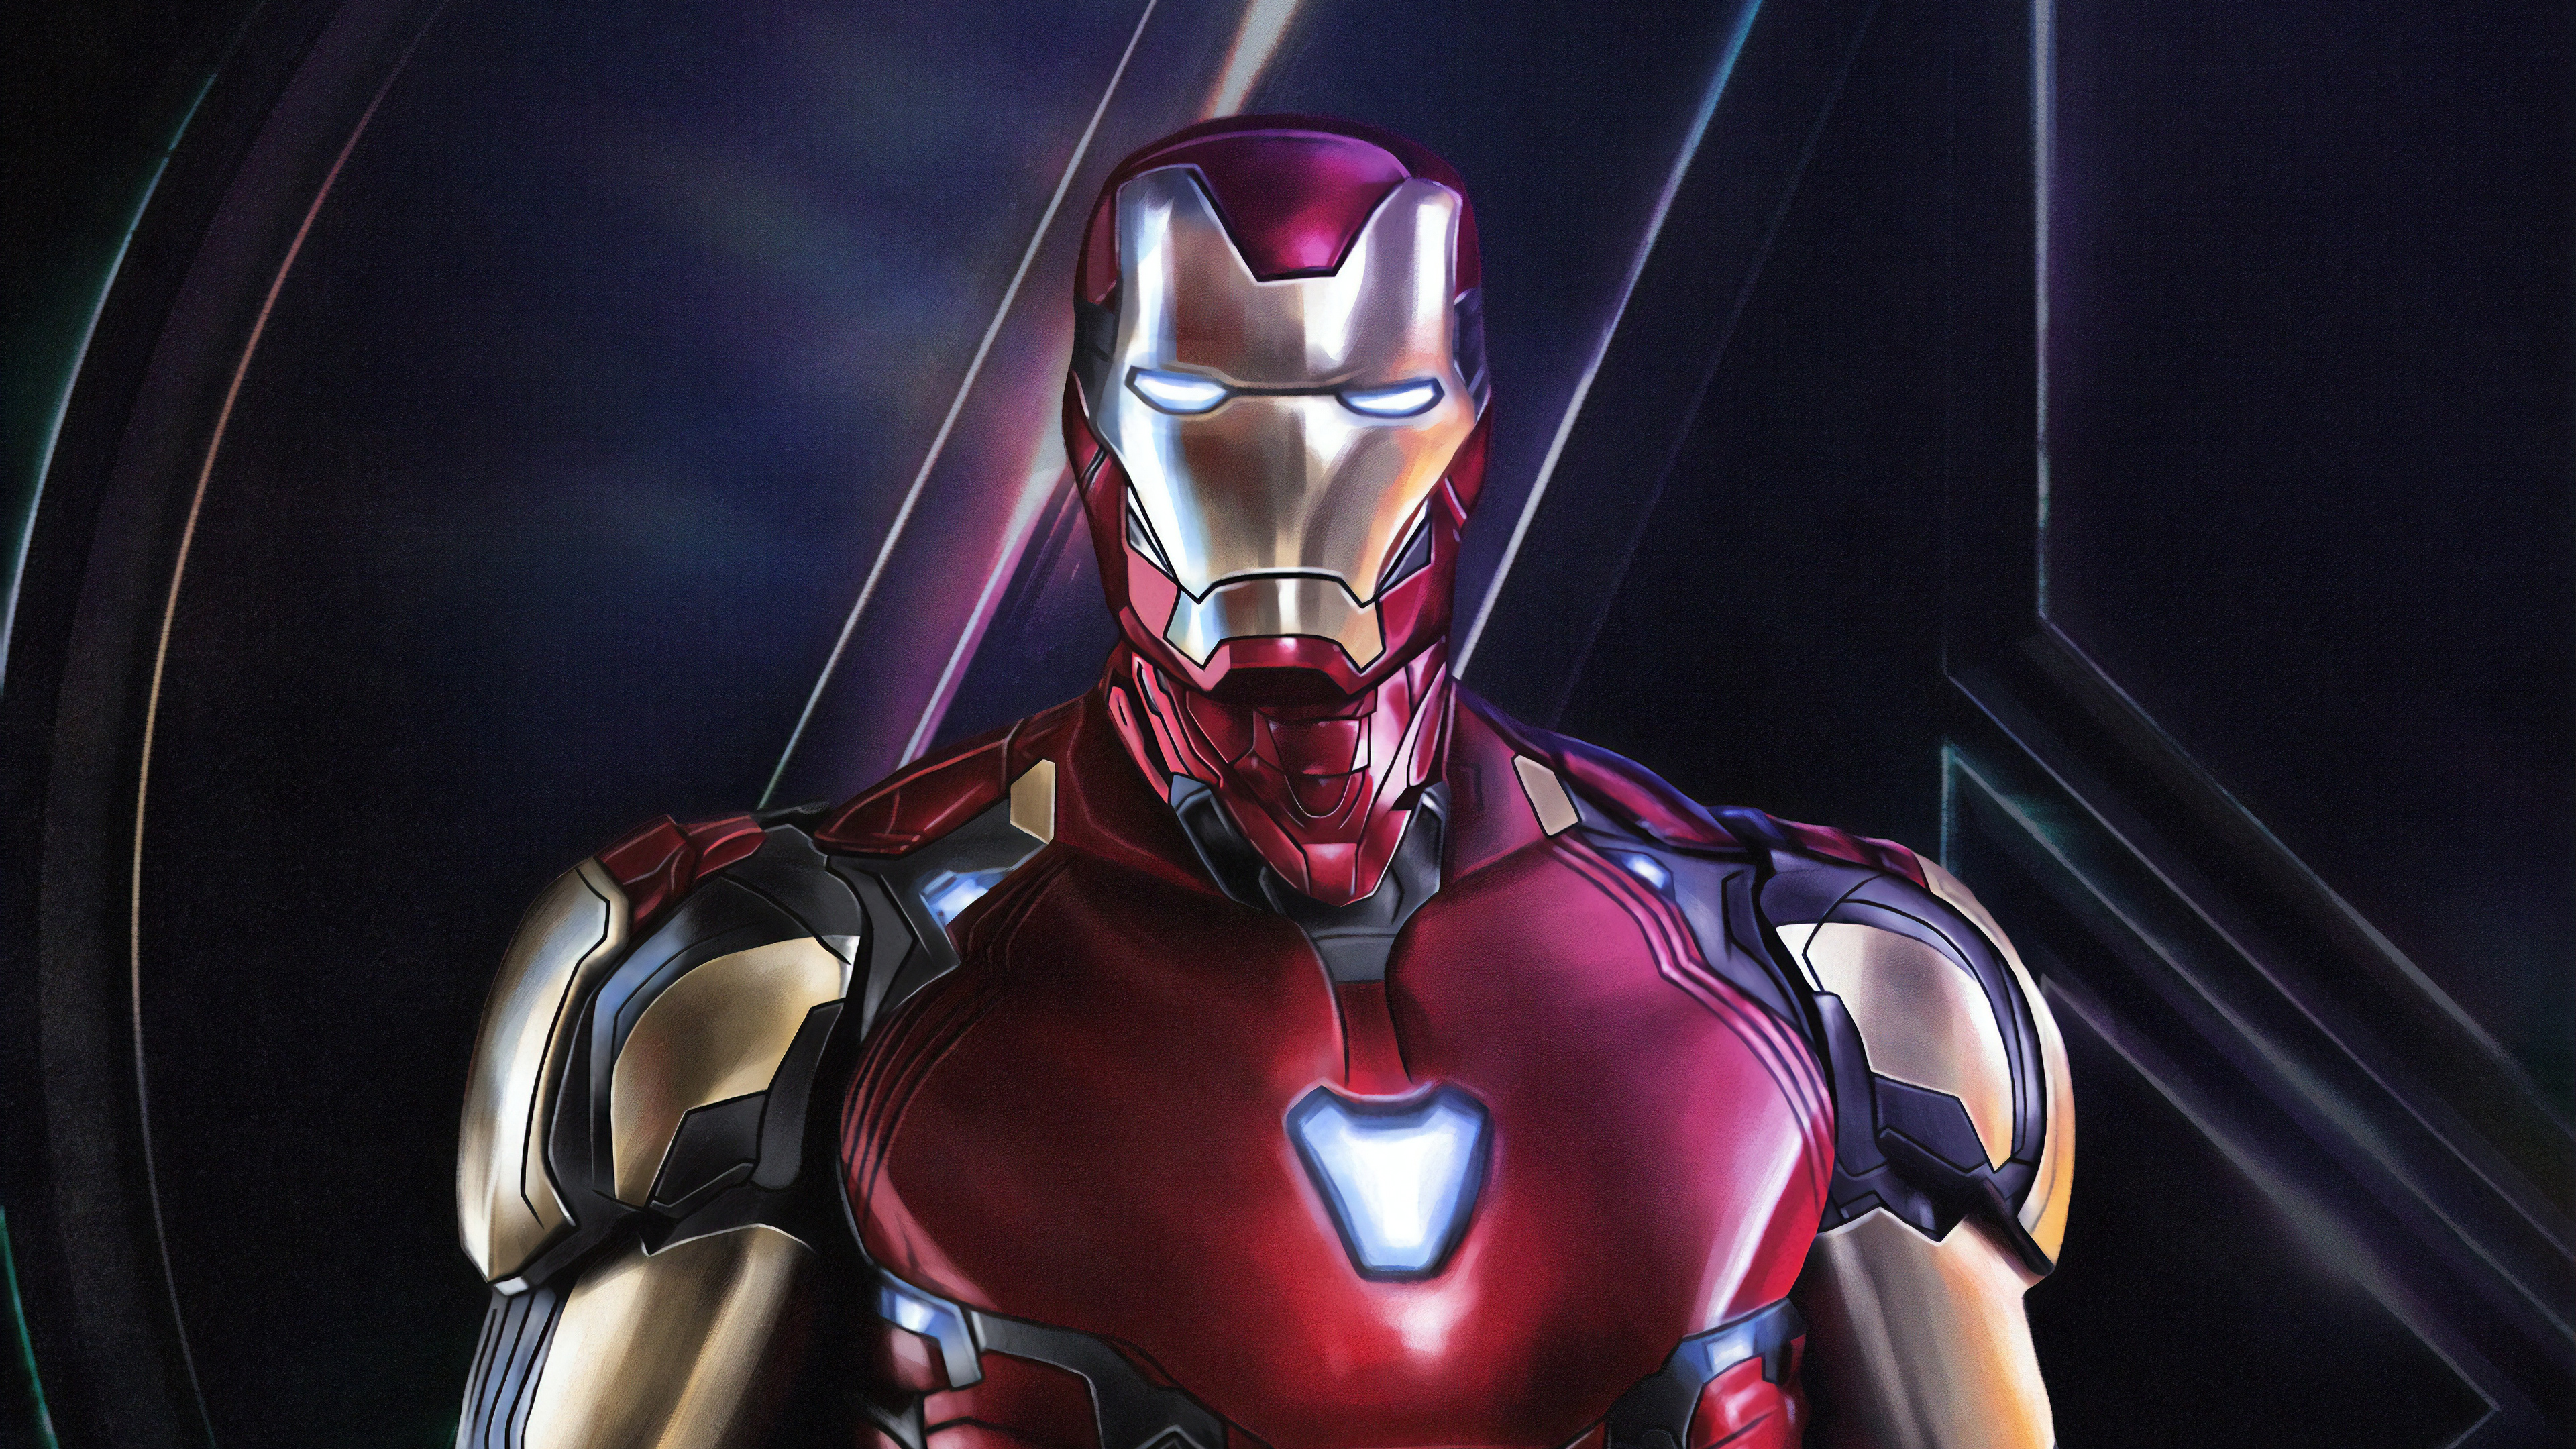 Bạn là fan của Iron Man? Hãy ngắm nhìn những hình nền Iron Man đẹp mắt và độc đáo để làm nền cho màn hình điện thoại và máy tính của mình. Những bức tranh này sẽ làm cho bạn cảm thấy như mình đang sống trong thế giới của siêu anh hùng này!